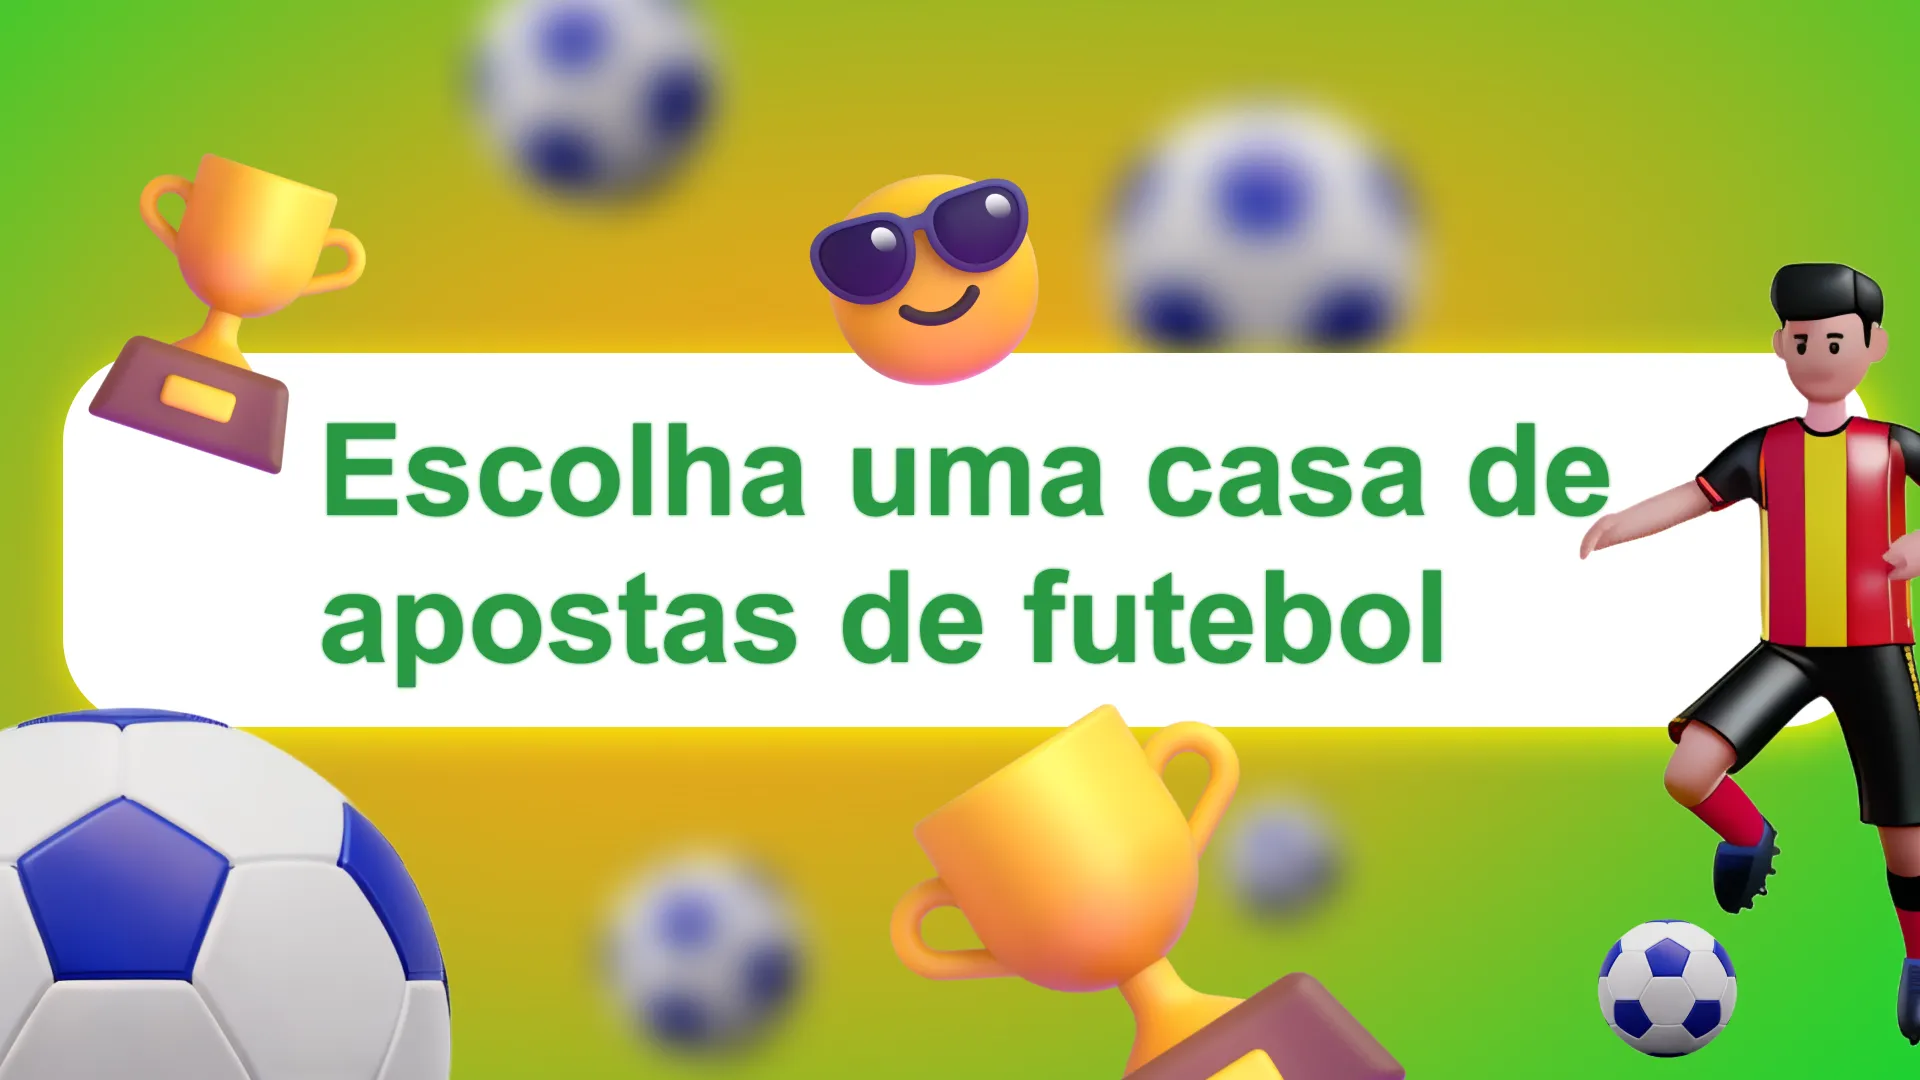 O primeiro passo para um início de sucesso no mundo das apostas em futebol é escolher uma casa de apostas brasileira confiável.